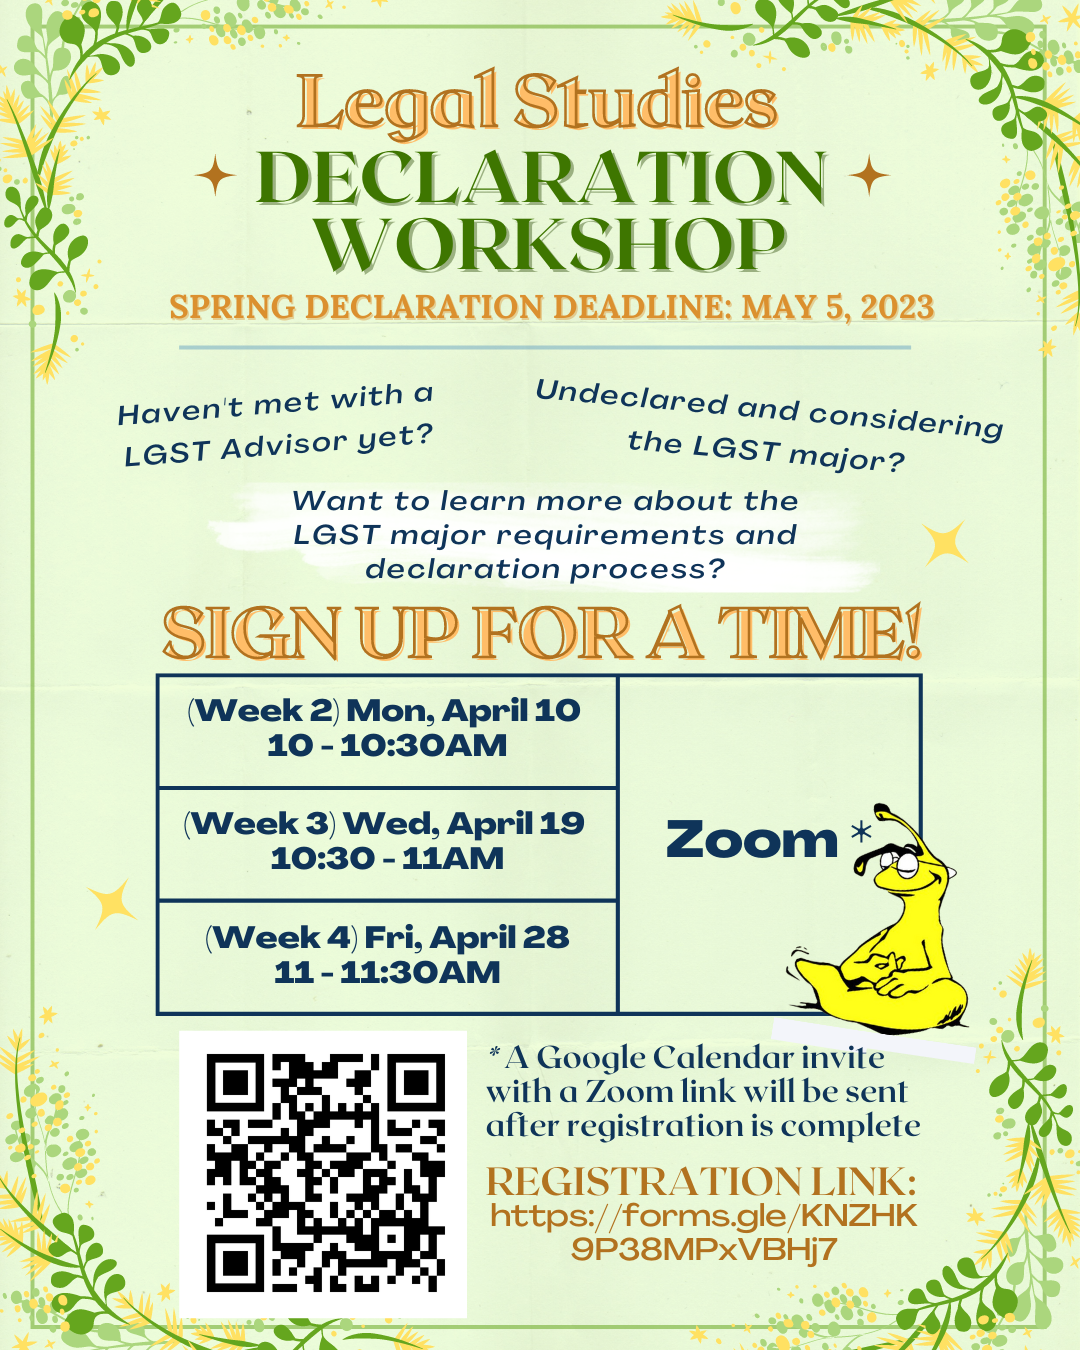 Spring Quarter 2023 Declaration Workshop poster with dates and QR code for registration.